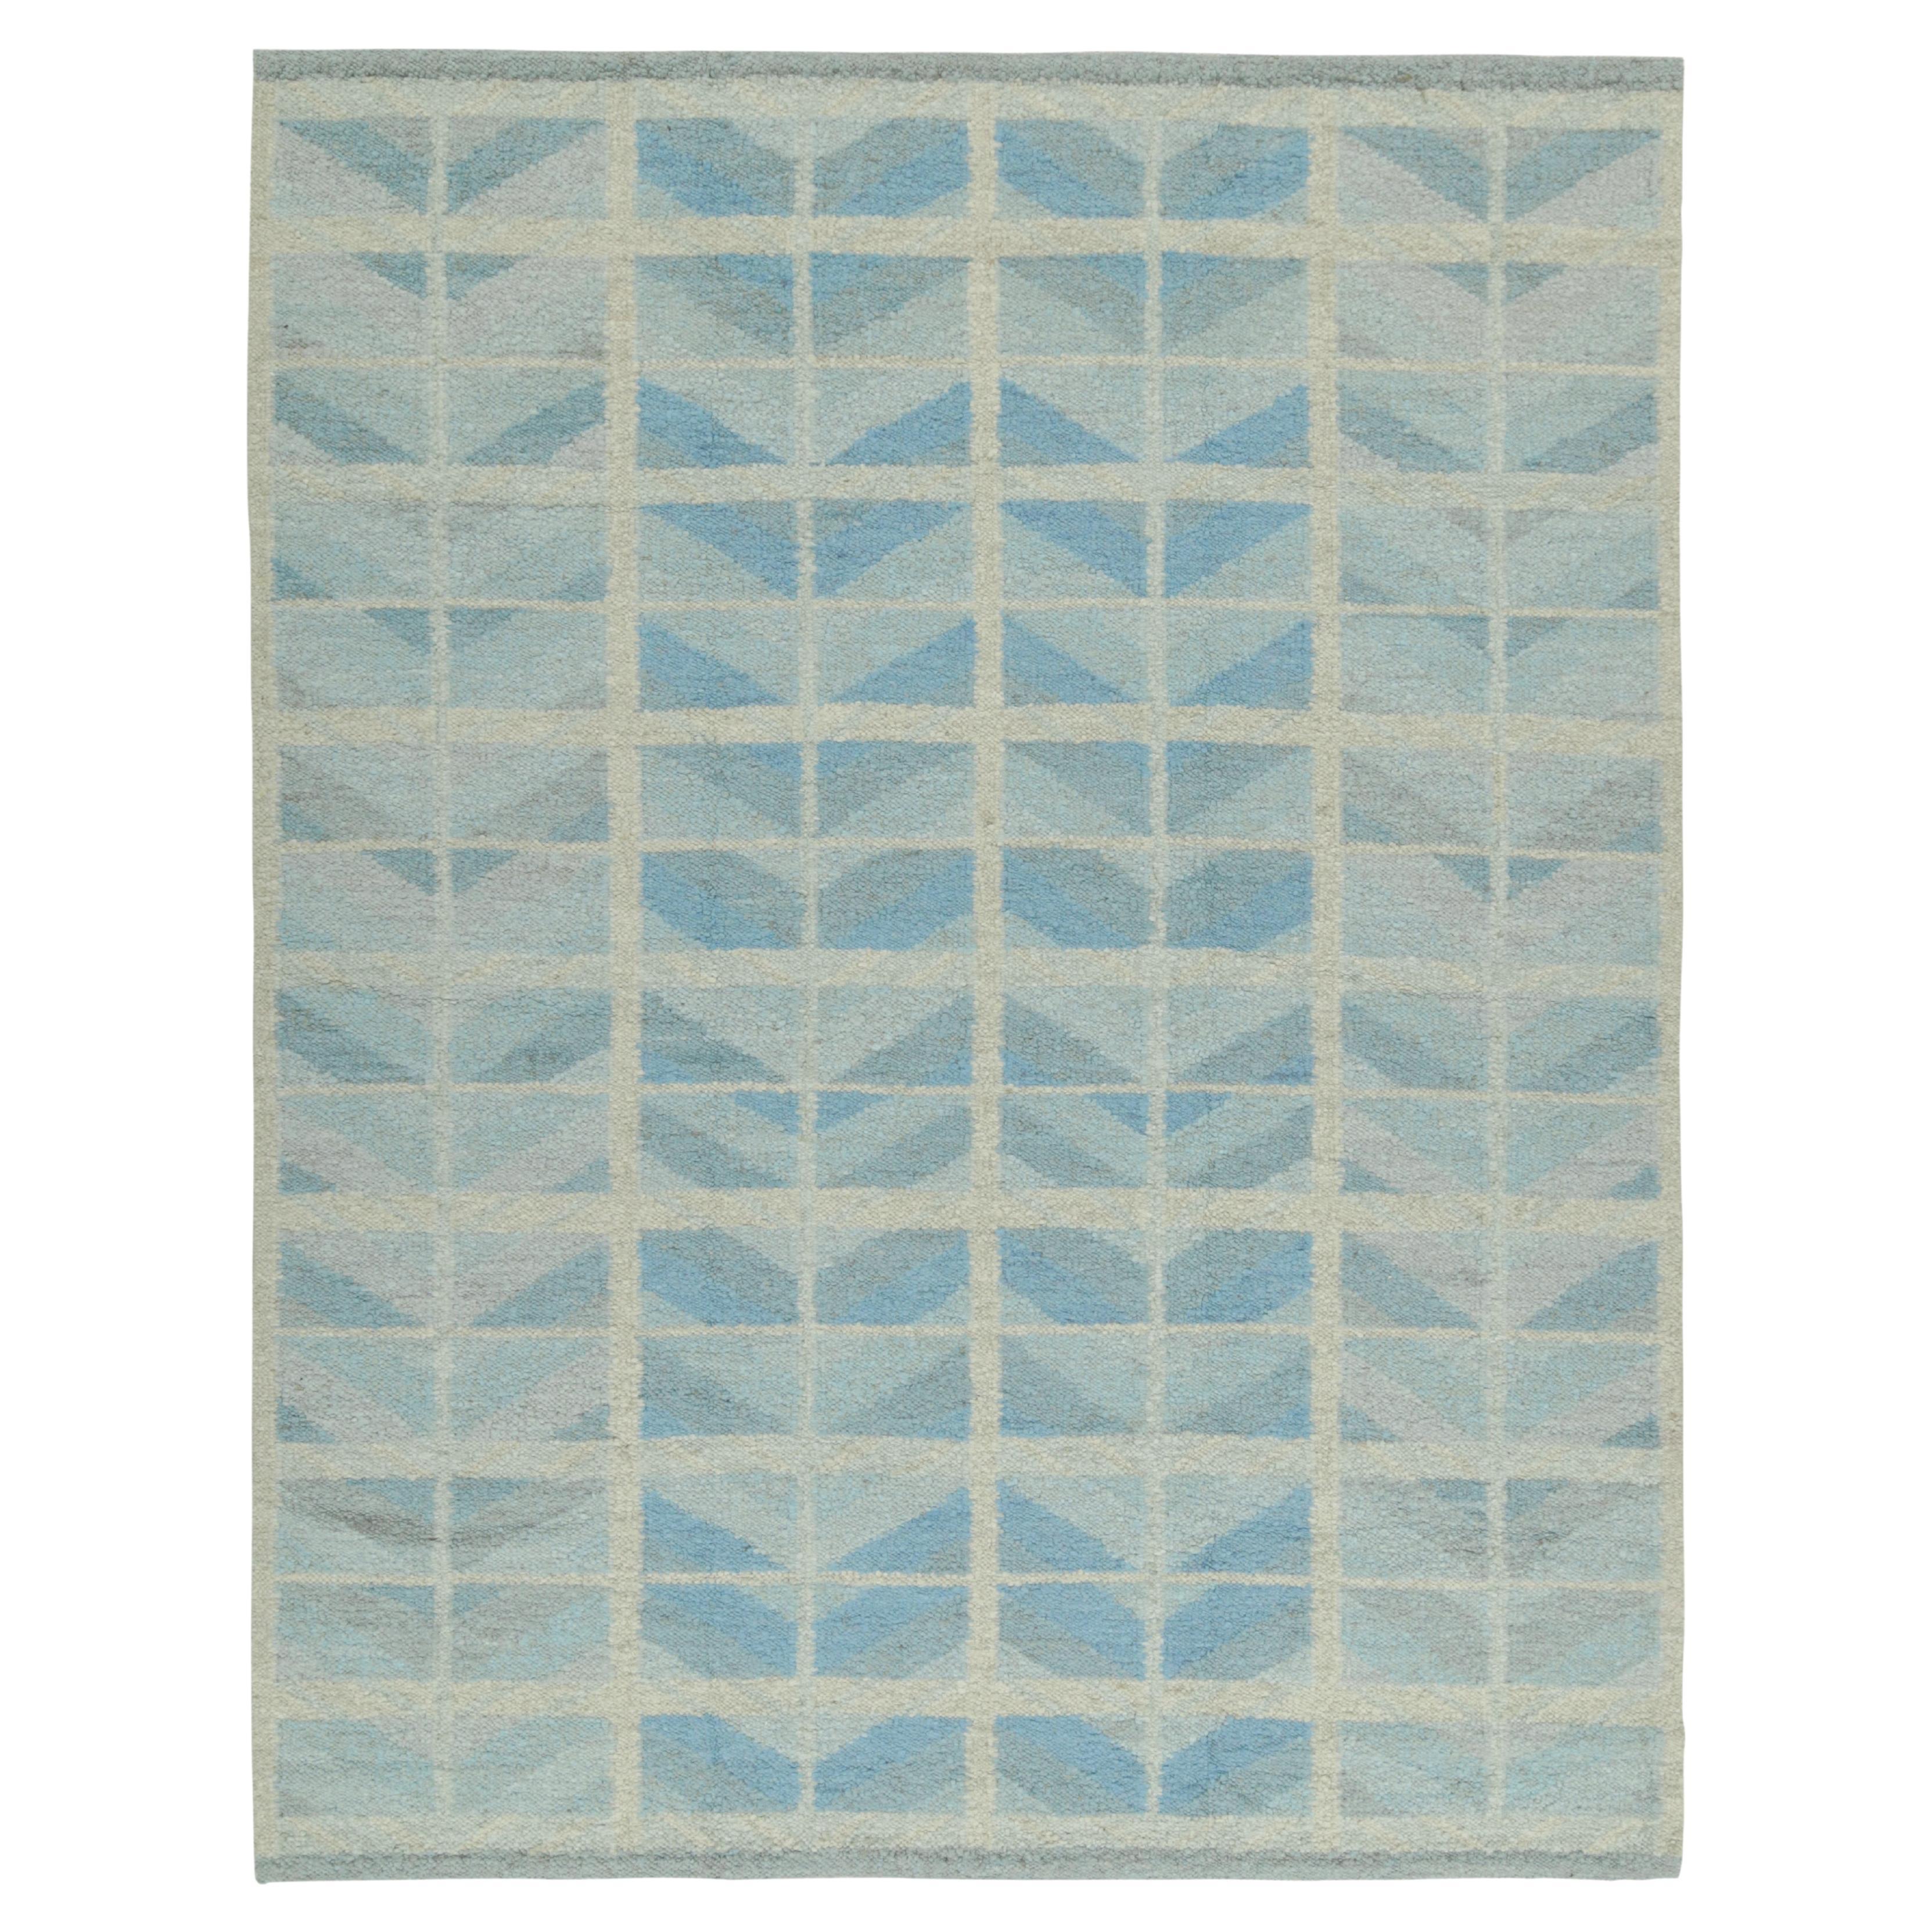 Skandinavischer Kilim von Rug & Kilim mit geometrischen Mustern in Blau und Grau